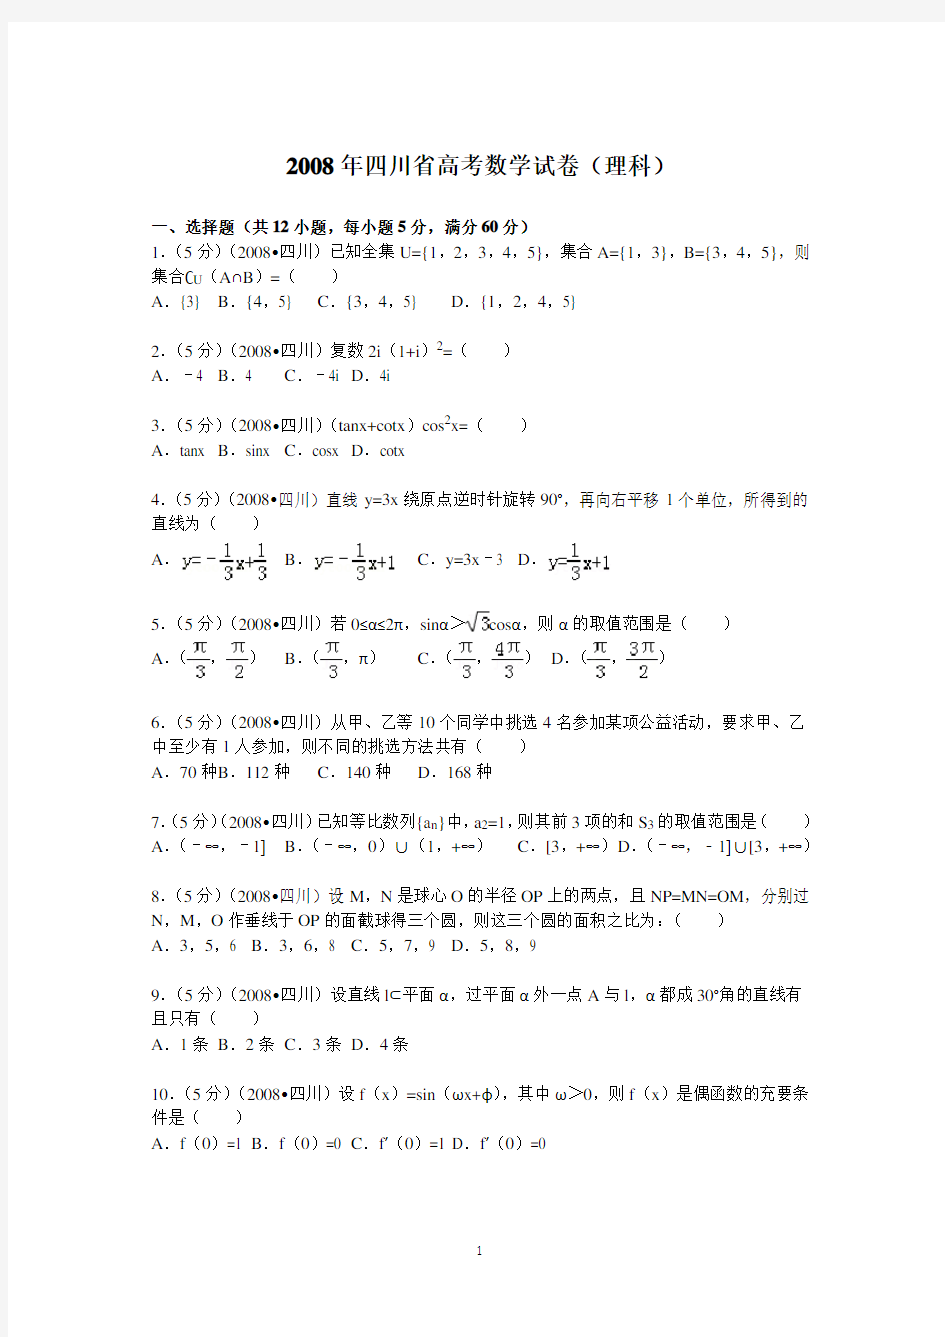 (完整版)2008年四川省高考数学试卷(理科)